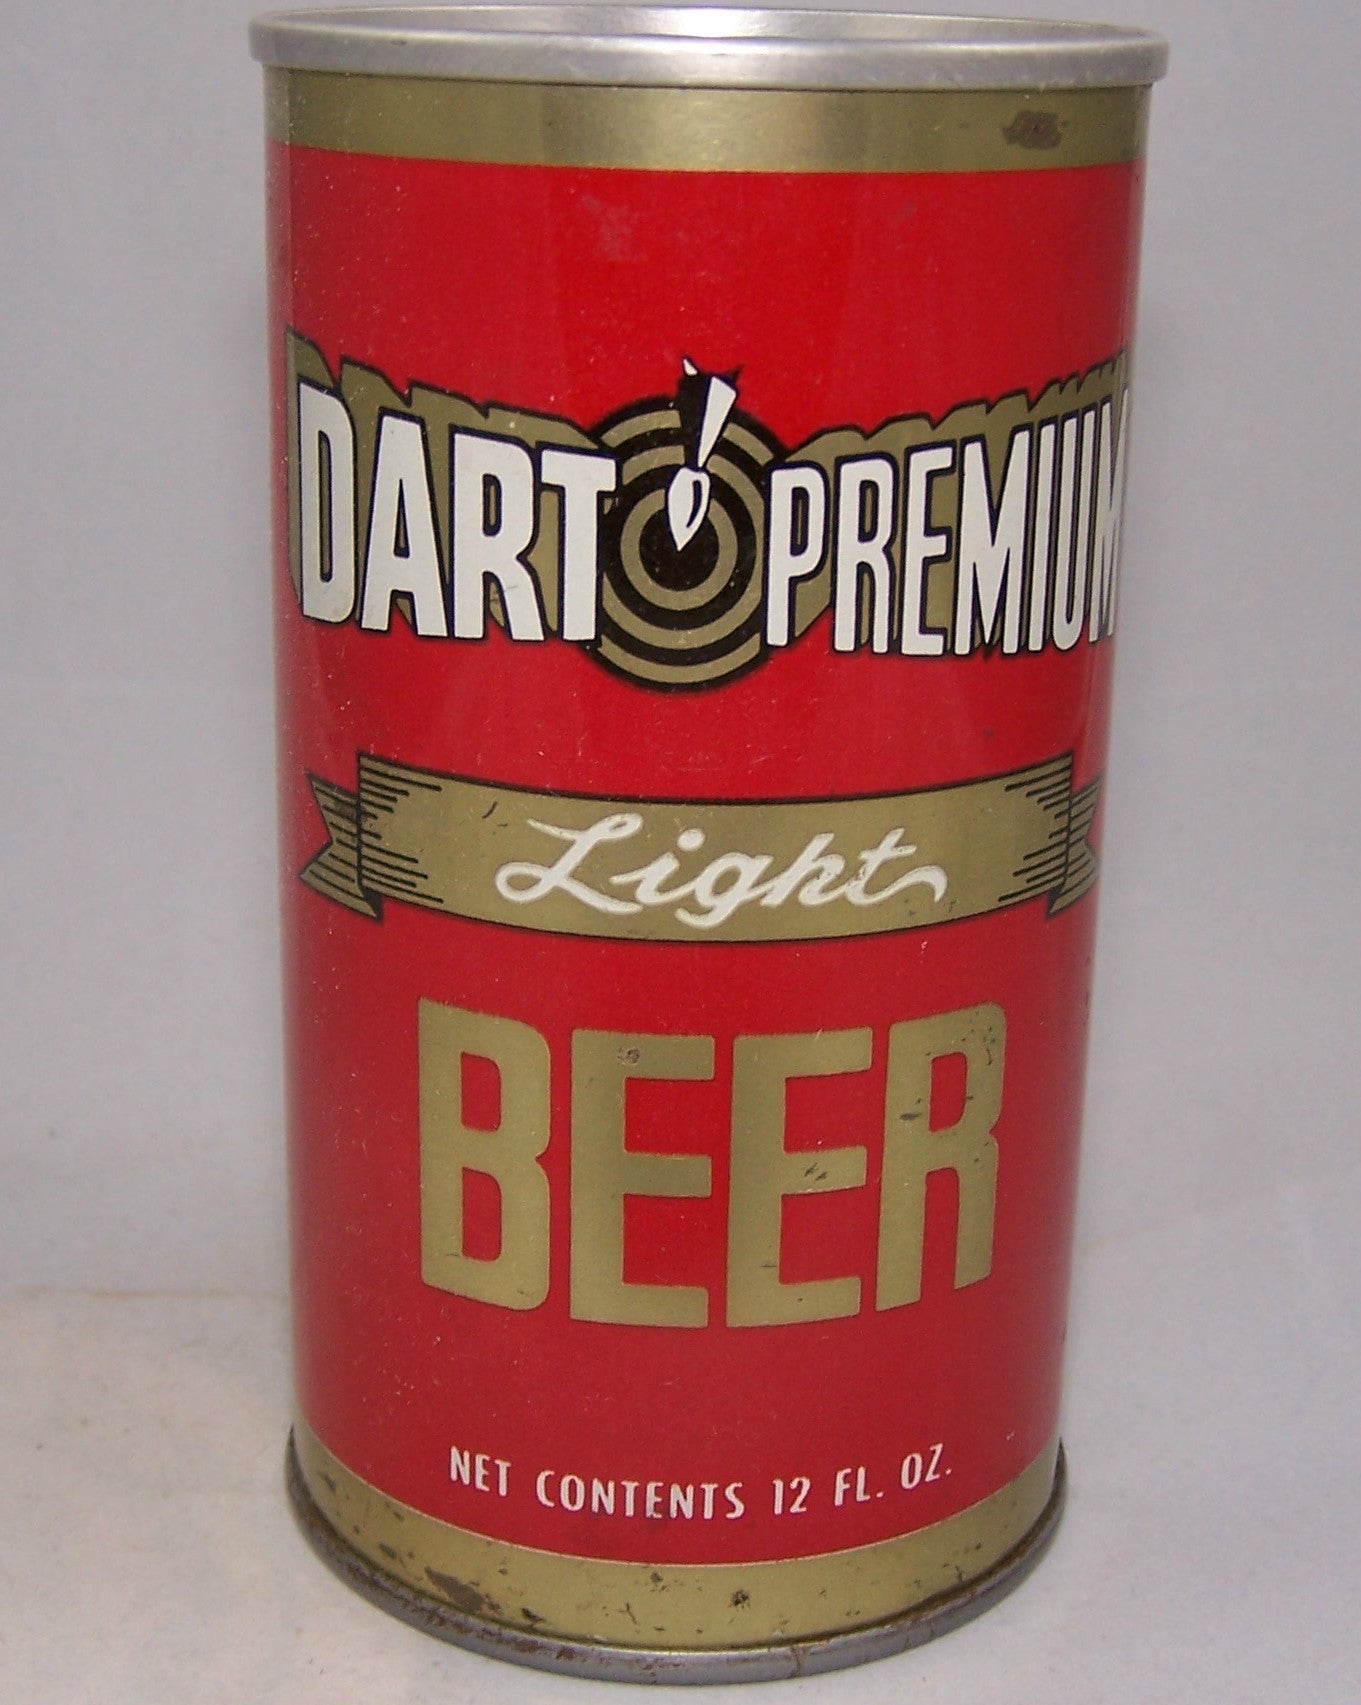 Dart Premium Light Beer, USBC II 58-14, Grade 1 Sold on 12/02/16